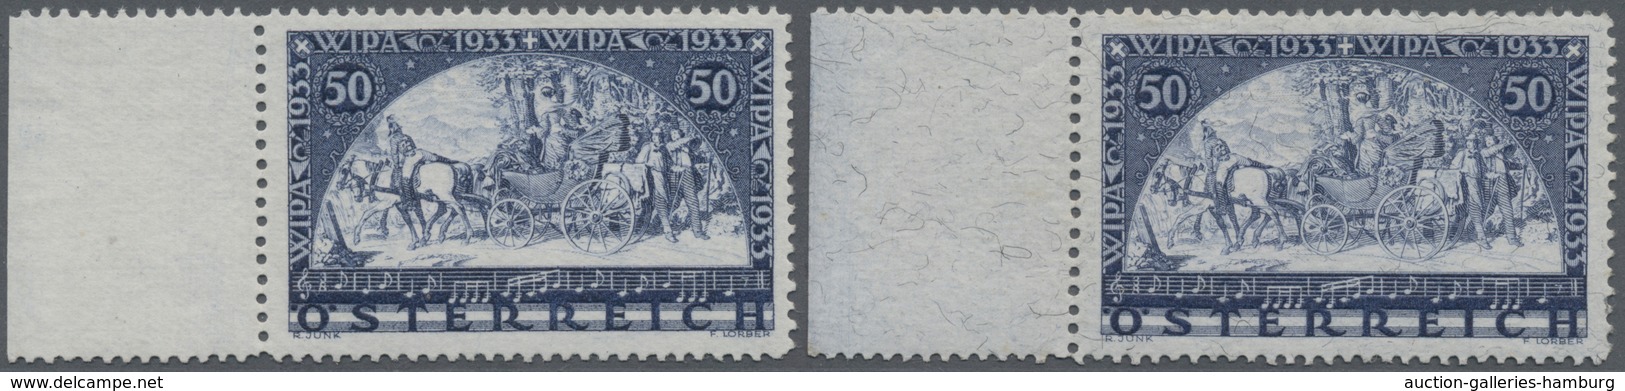 Österreich: 1933, Wipa, Normales Und Faserpapier, Zwei Werte Je Vom Linken Bogenrand, Postfrisch, Un - Gebraucht